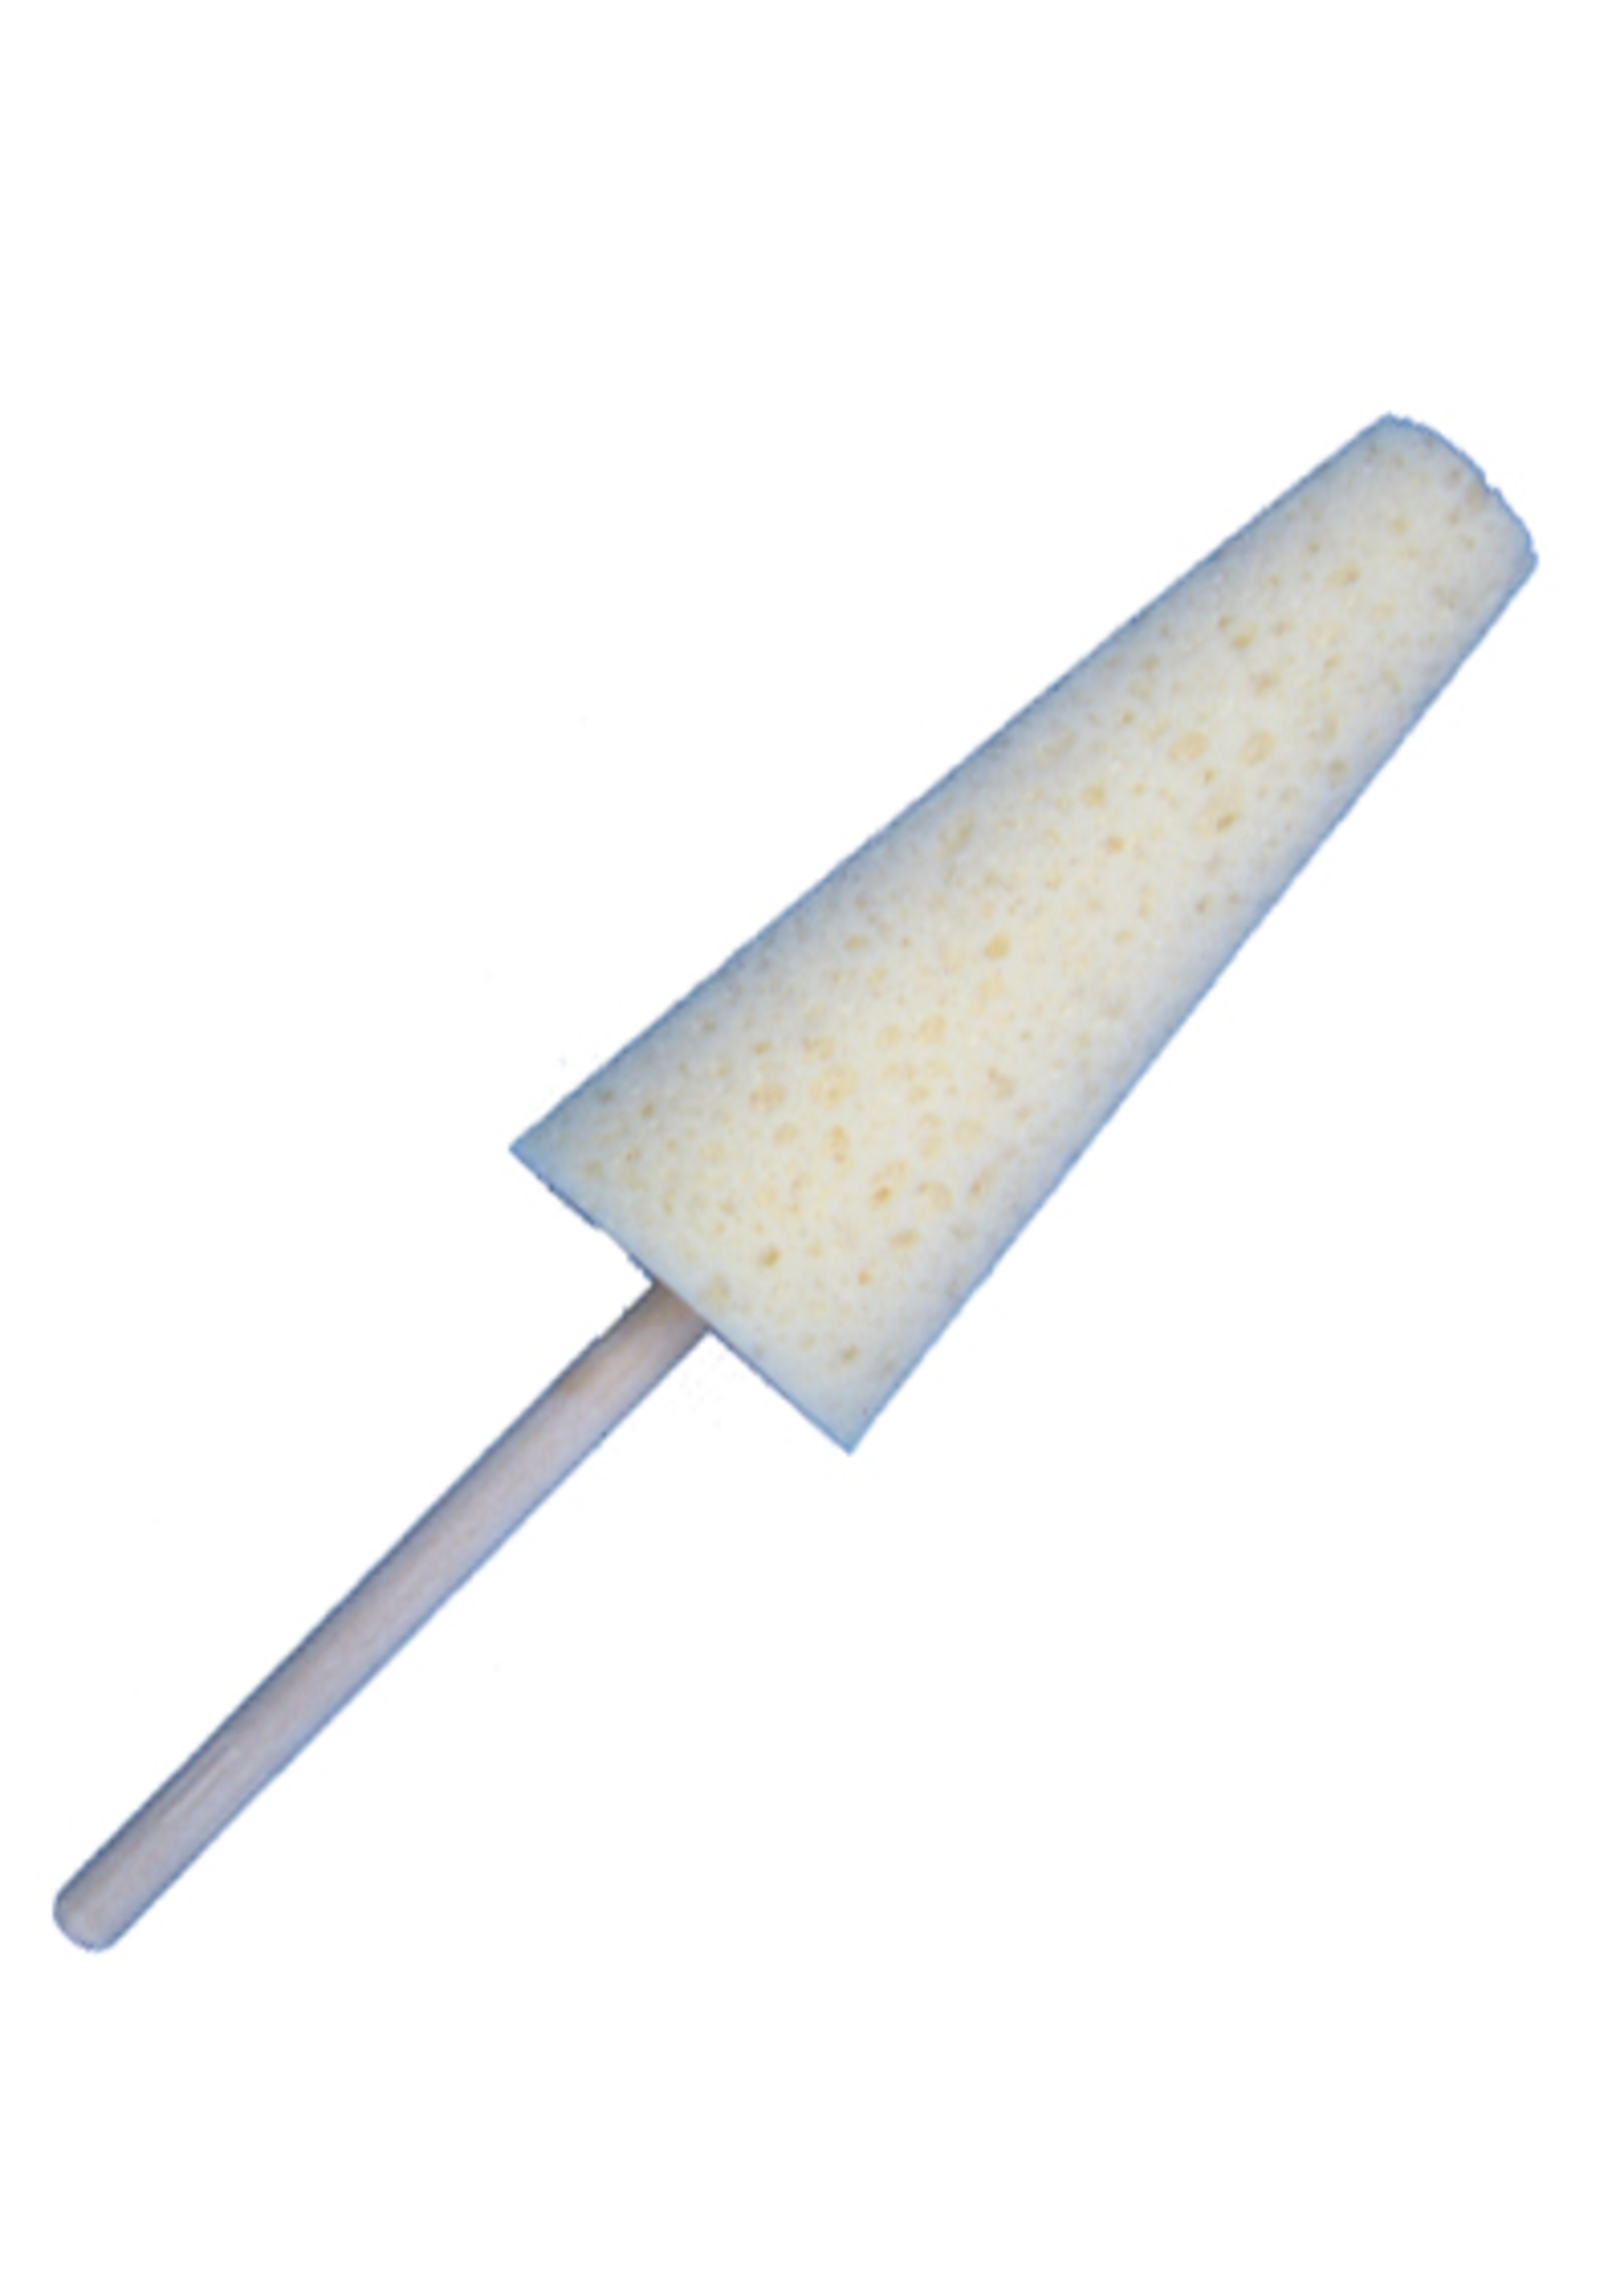 Tapered Sponge on a Stick (diddler)